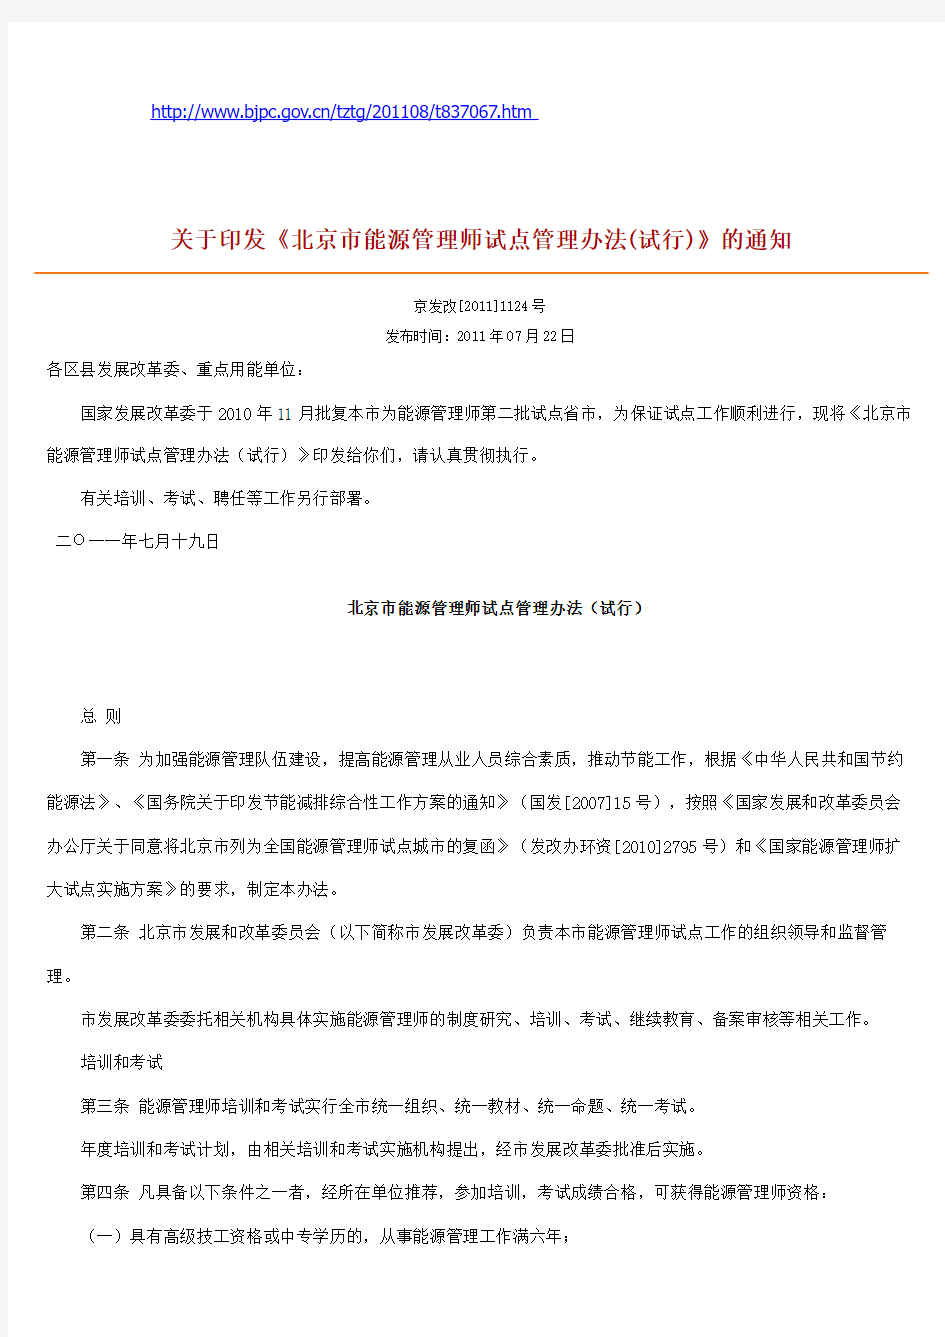 关于印发《北京市能源管理师试点管理办法(试行)》的通知